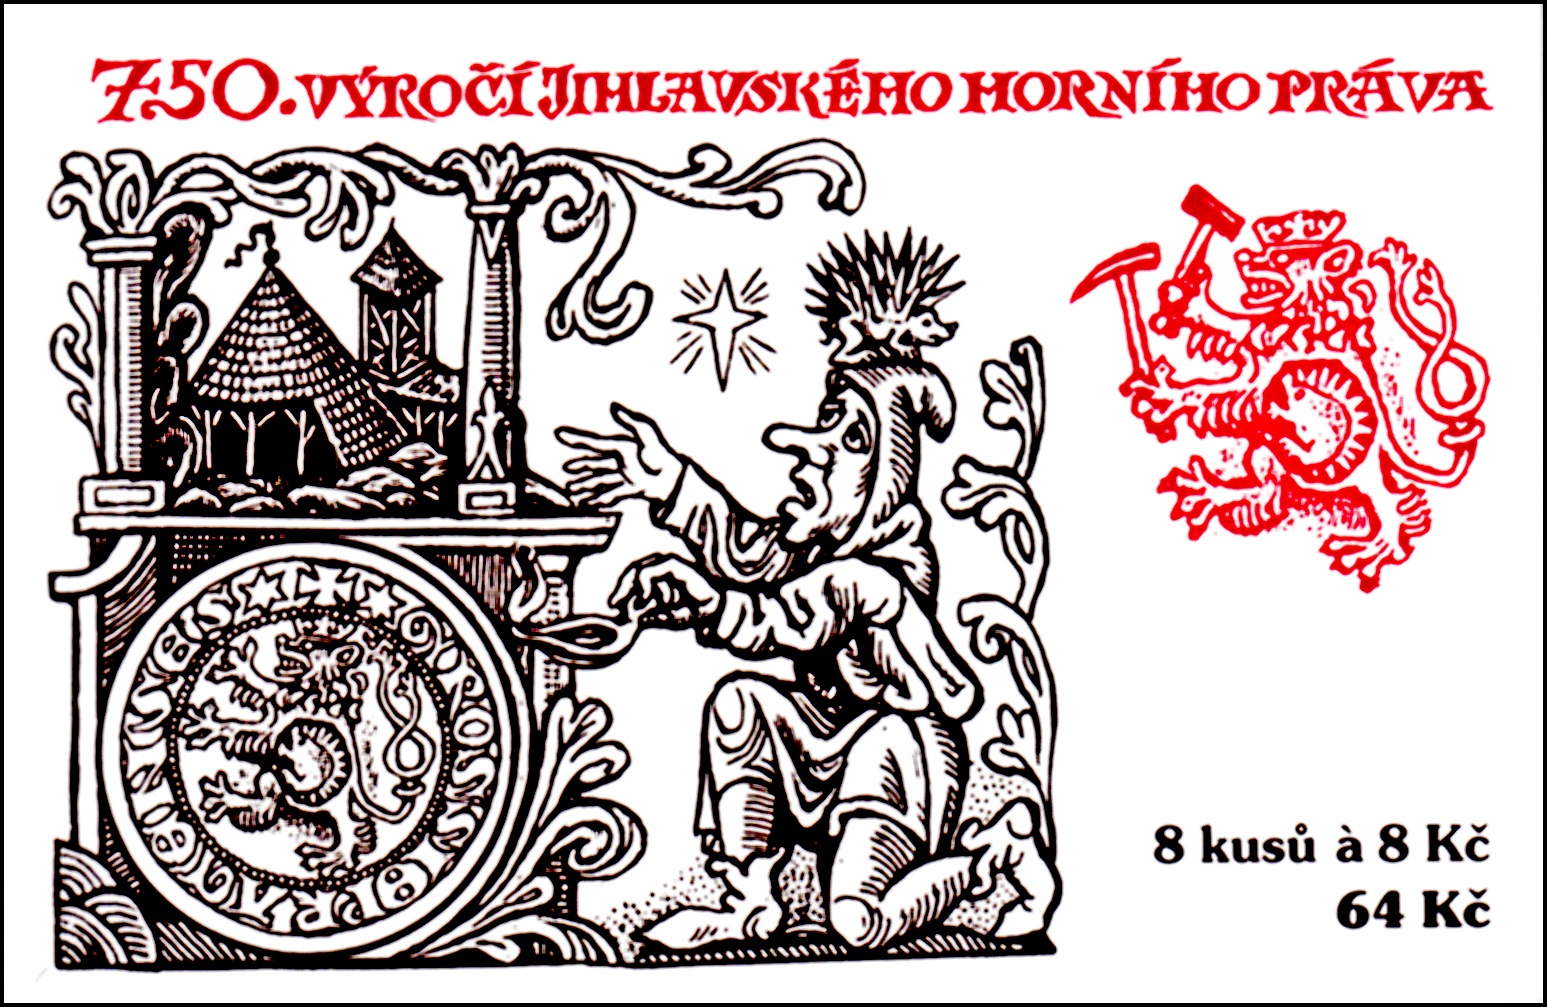 750. výročí Jihlavského horního práva (známkový sešítek)